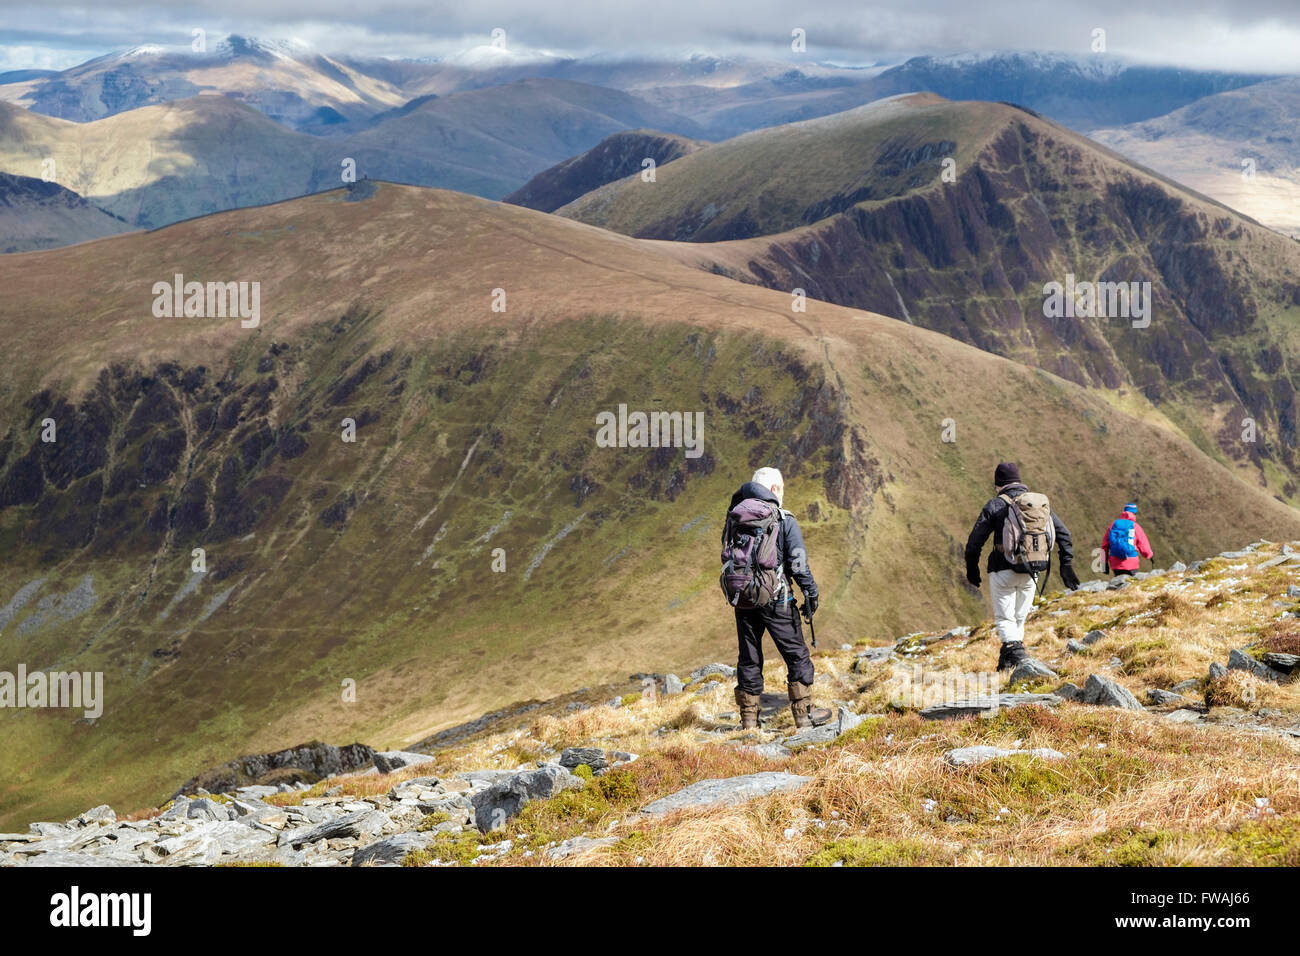 Menschen Wanderer Wandern absteigend Craig Cwm Silyn in Richtung Mynydd Tal-y-mignedd auf Nantlle Ridge in den Bergen von Snowdonia National Park (Eryri) Wales UK Stockfoto